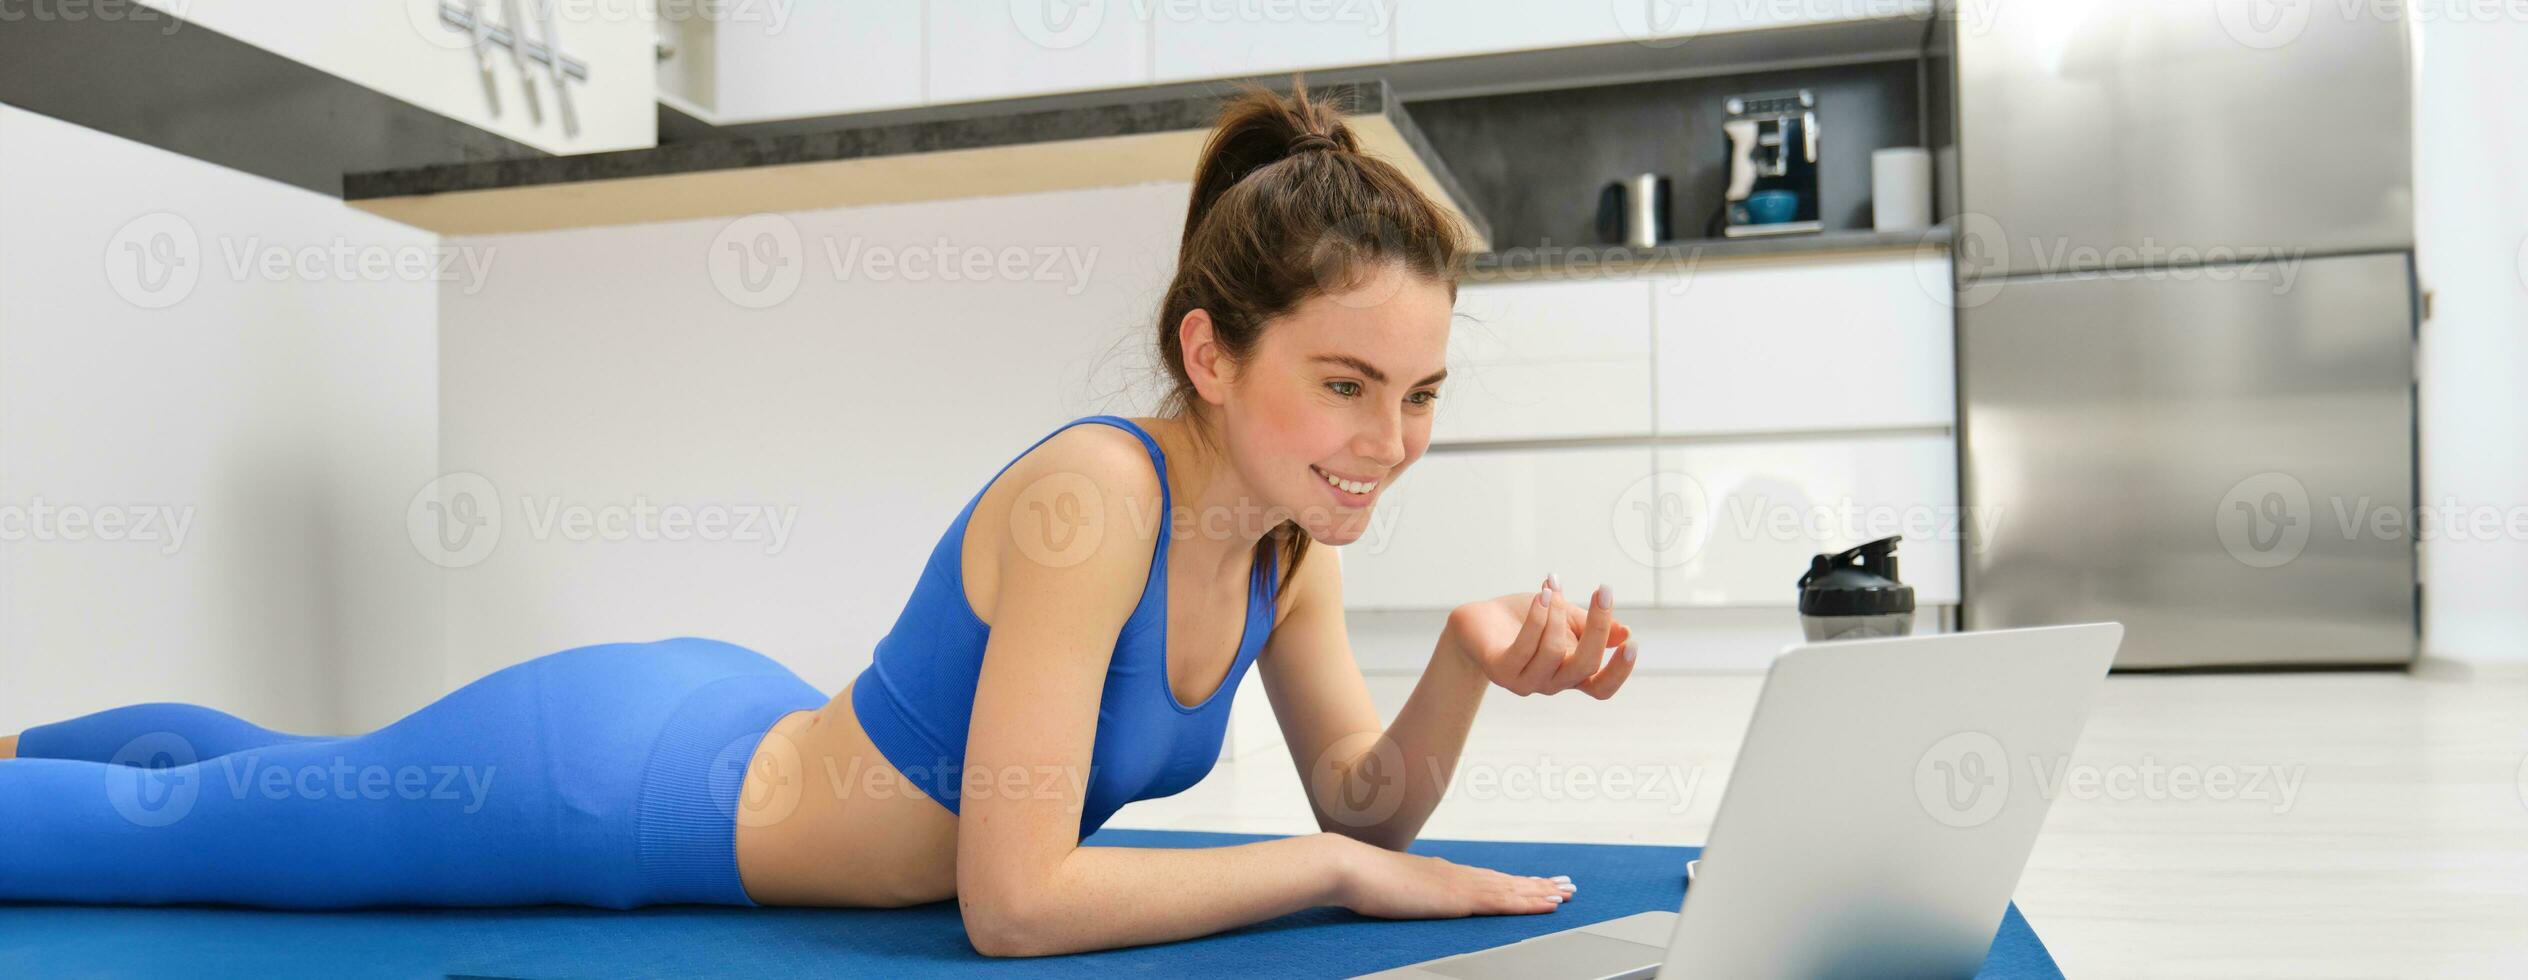 Immagine di giovane fitness ragazza parlando in linea su computer portatile, video chat, posa su pavimento gomma da cancellare stuoia, fare esercizi, discutere allenarsi addestramento, yoga a partire dal casa foto